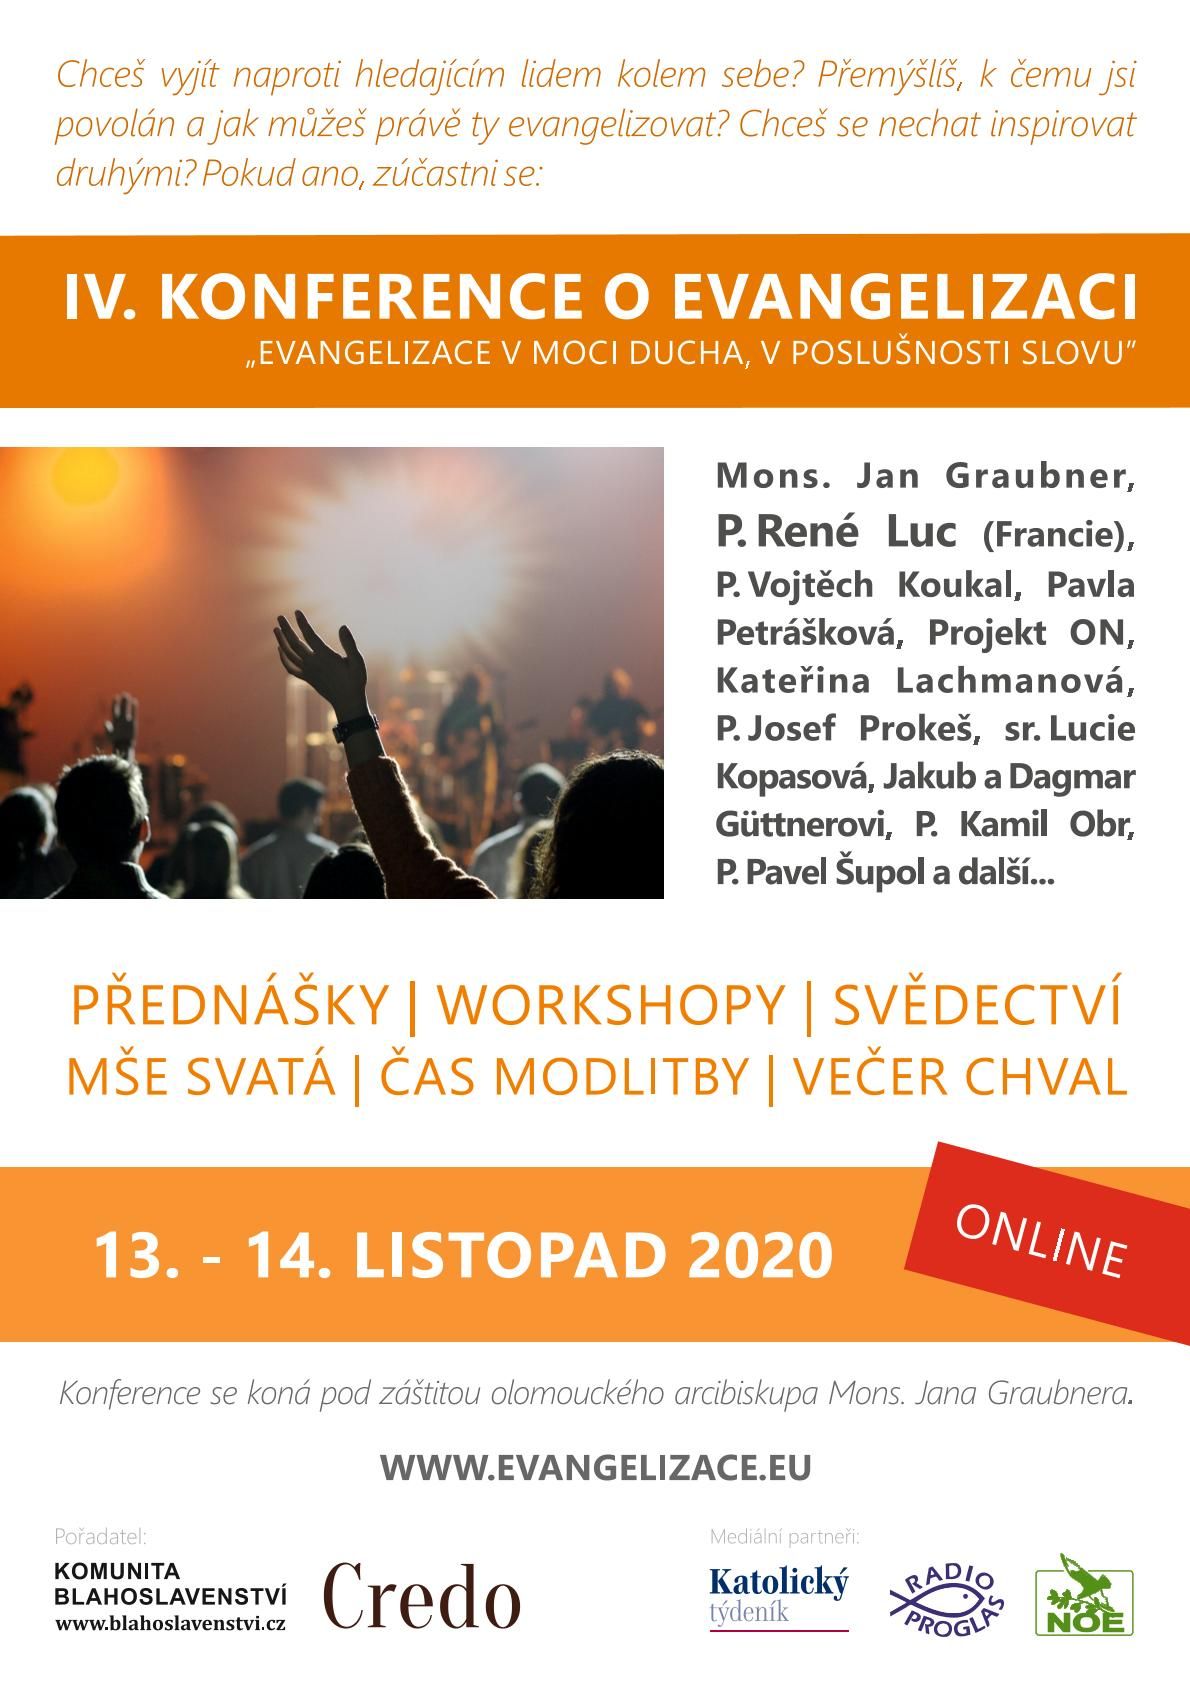 Konference o evangelizaci - tentokrát ONLINE z pohodlí domova 13.-14. 11.